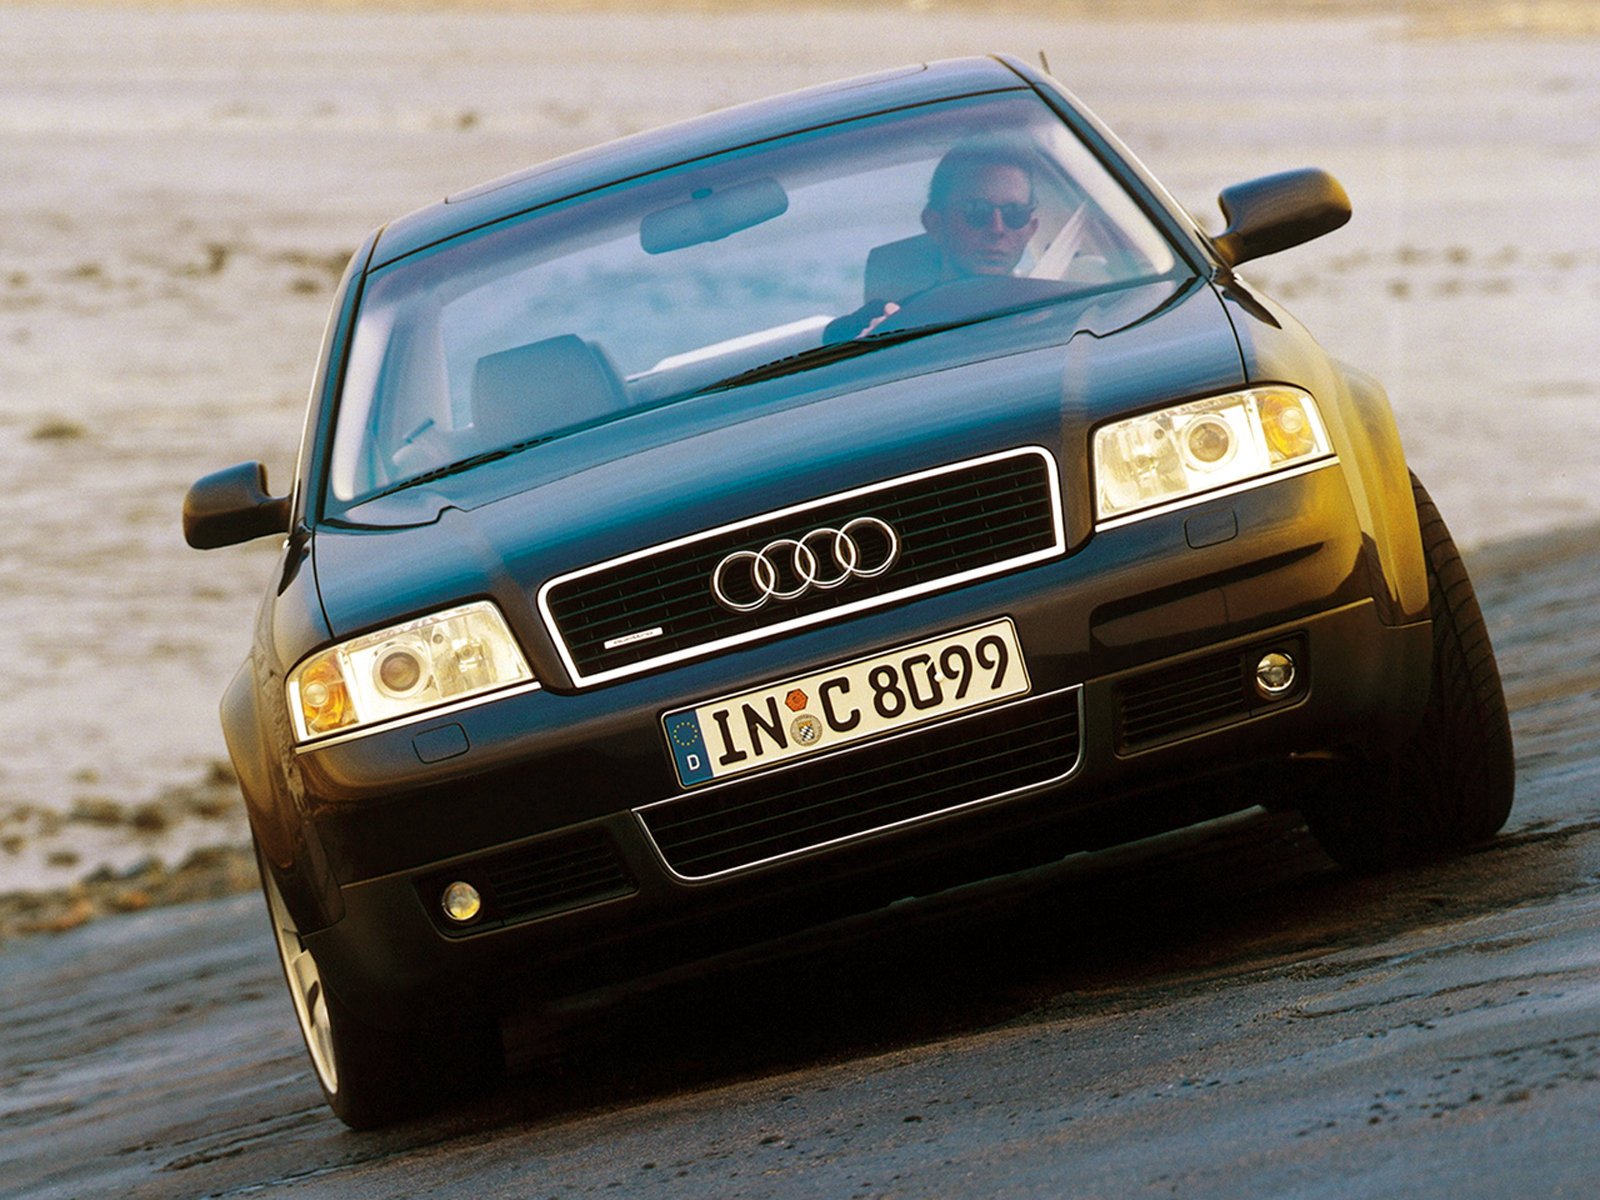 Ауди а6 с5 2001 год. Audi a6 c5 1999. Аууда6с5 кватро. Audi a6 с5. Ауди а6 с5 кватро.